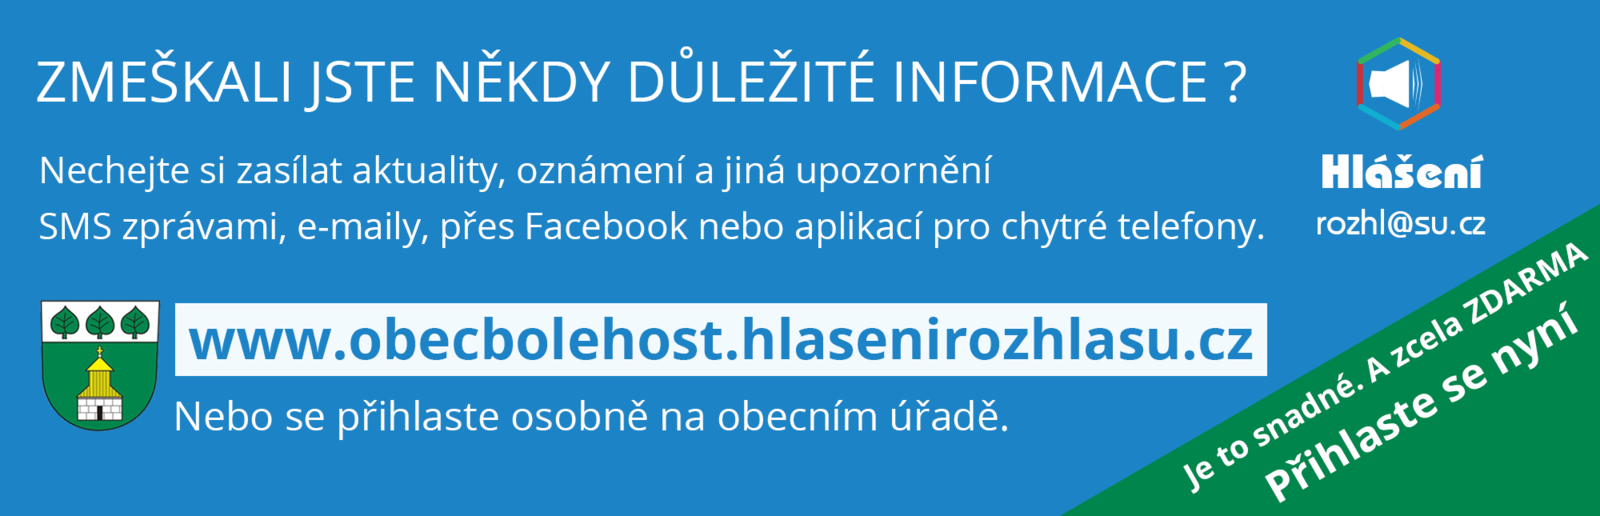 Hlaseni-web-banner-III-wide-Bolehost.png